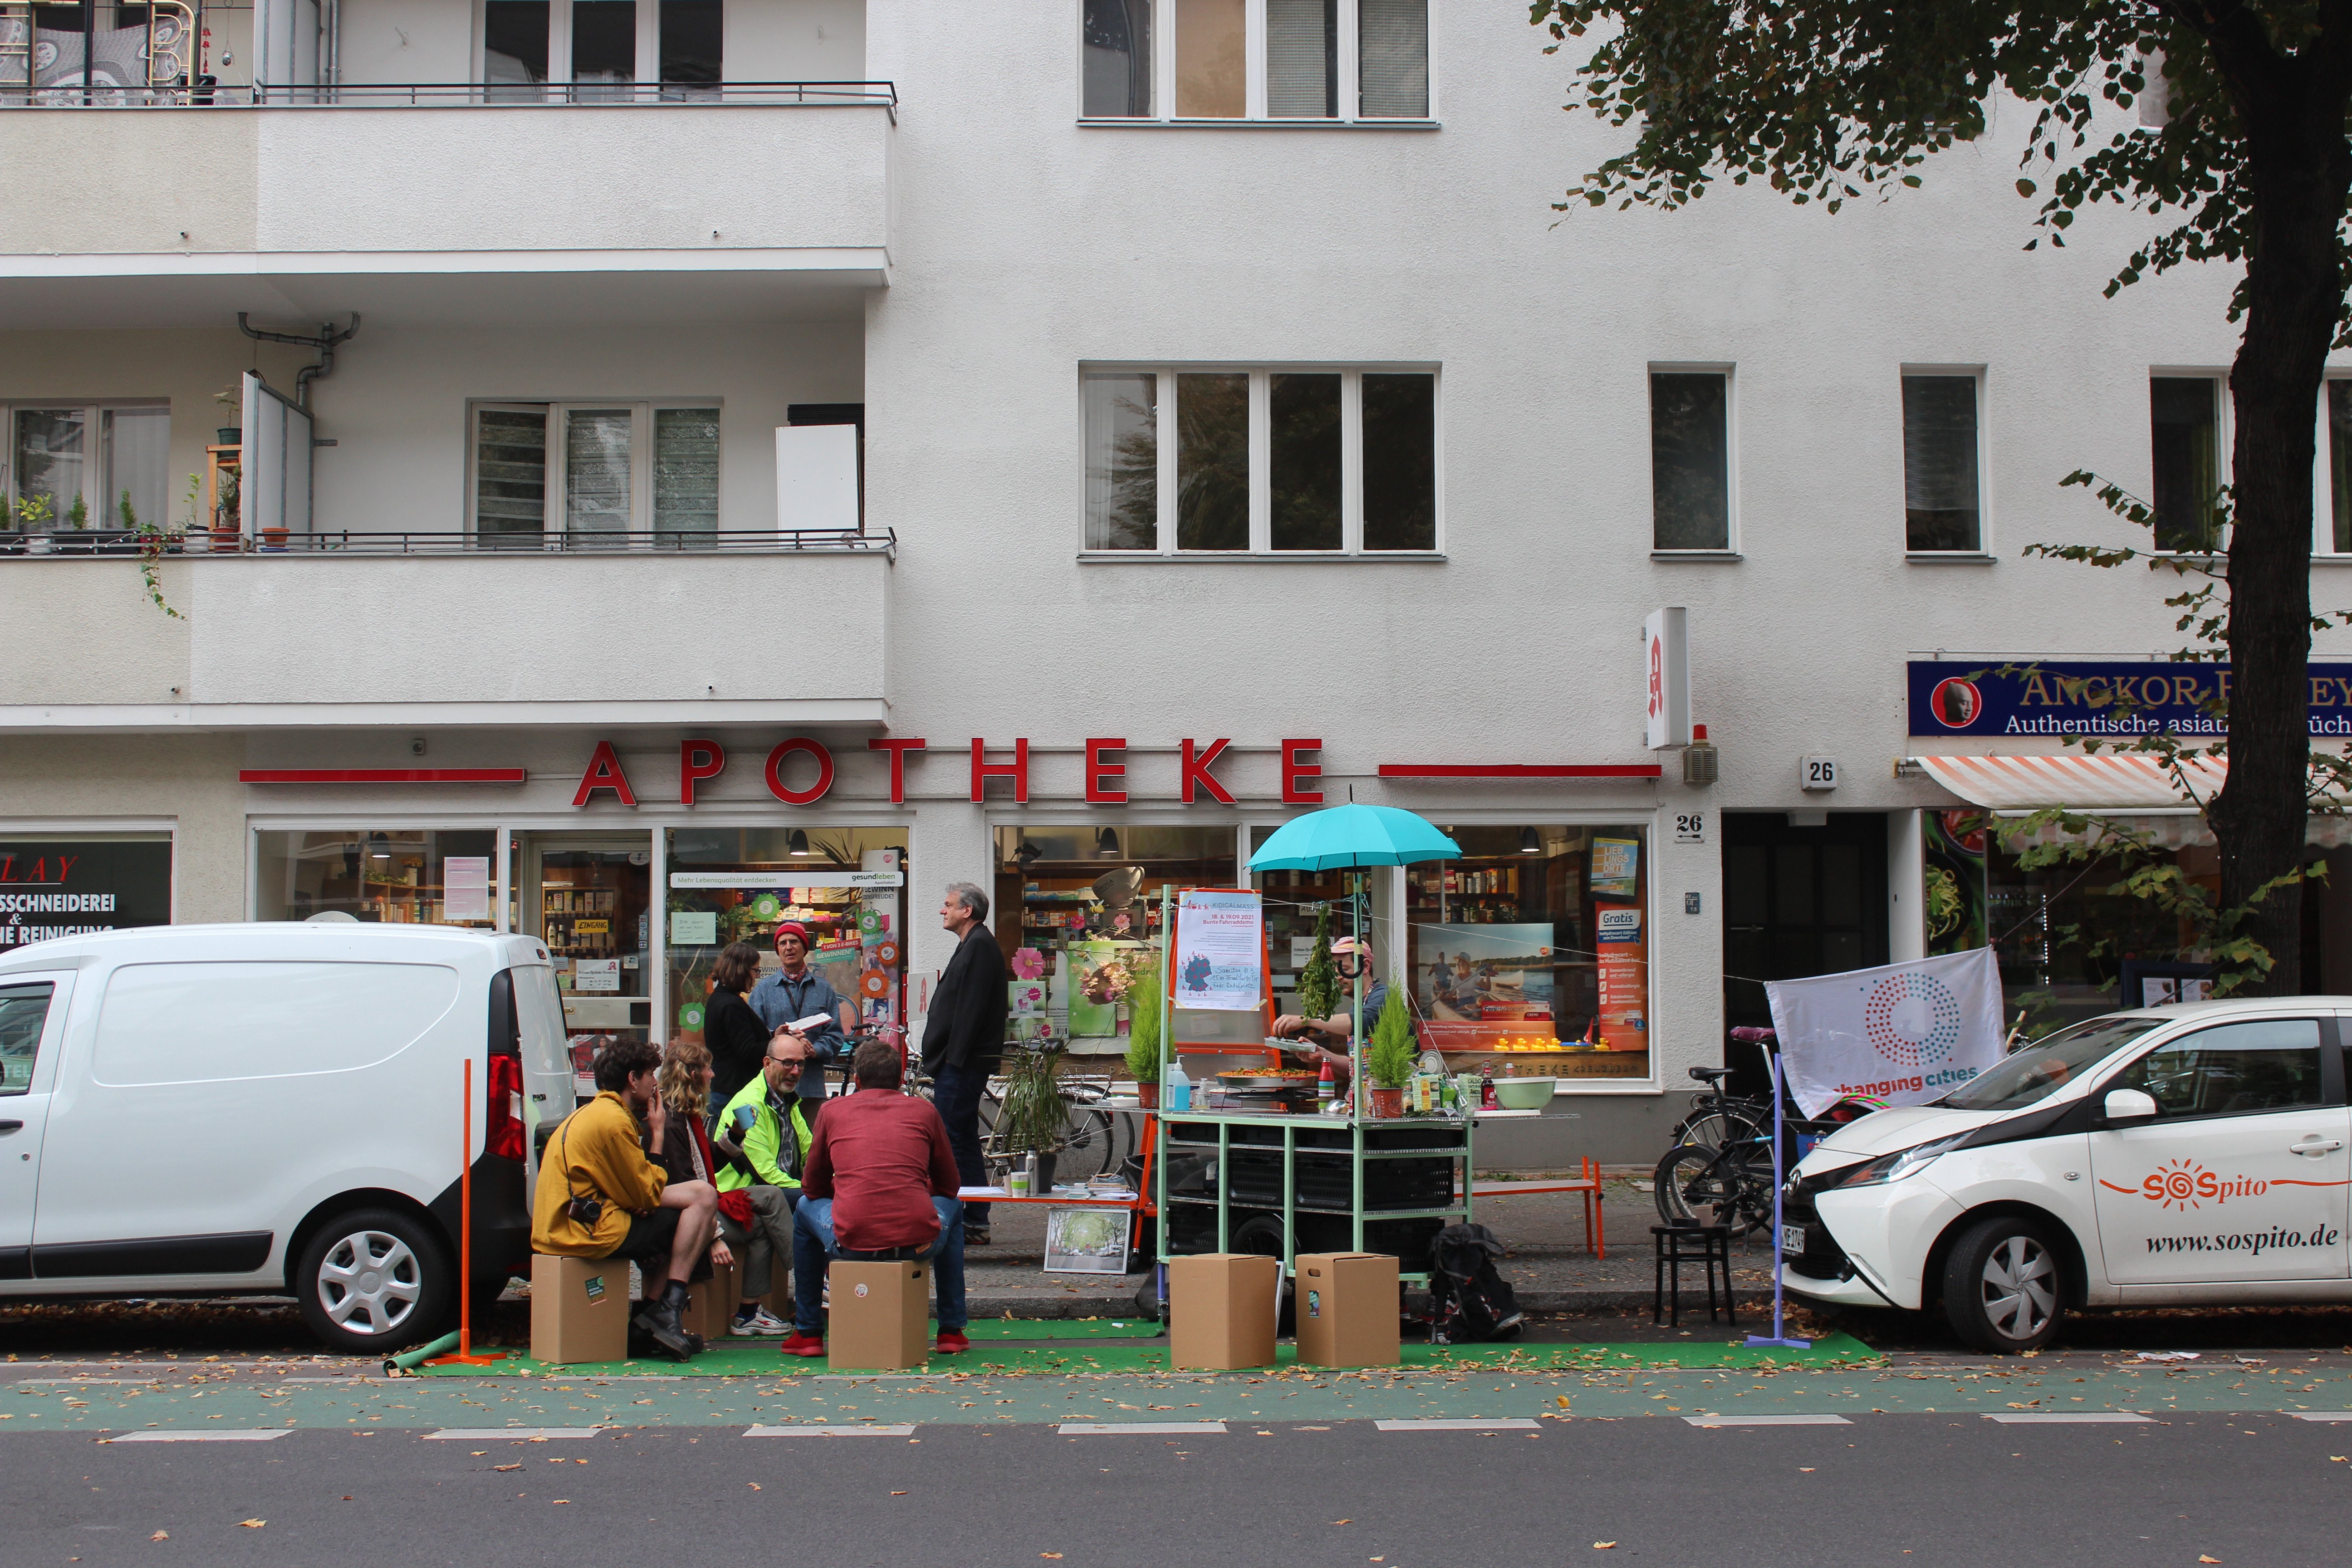 Vor einer Apotheke blockieren die Künstler*innen einen Auto-Parkplatz. Sie haben Papp-Hocker aufgebaut. Einige Menschen sitzen darauf. Rechts daneben steht ein Fahrrad-Anhänger, umgebaut zu einer mobilen Küche. Eine Person schenkt Essen aus.